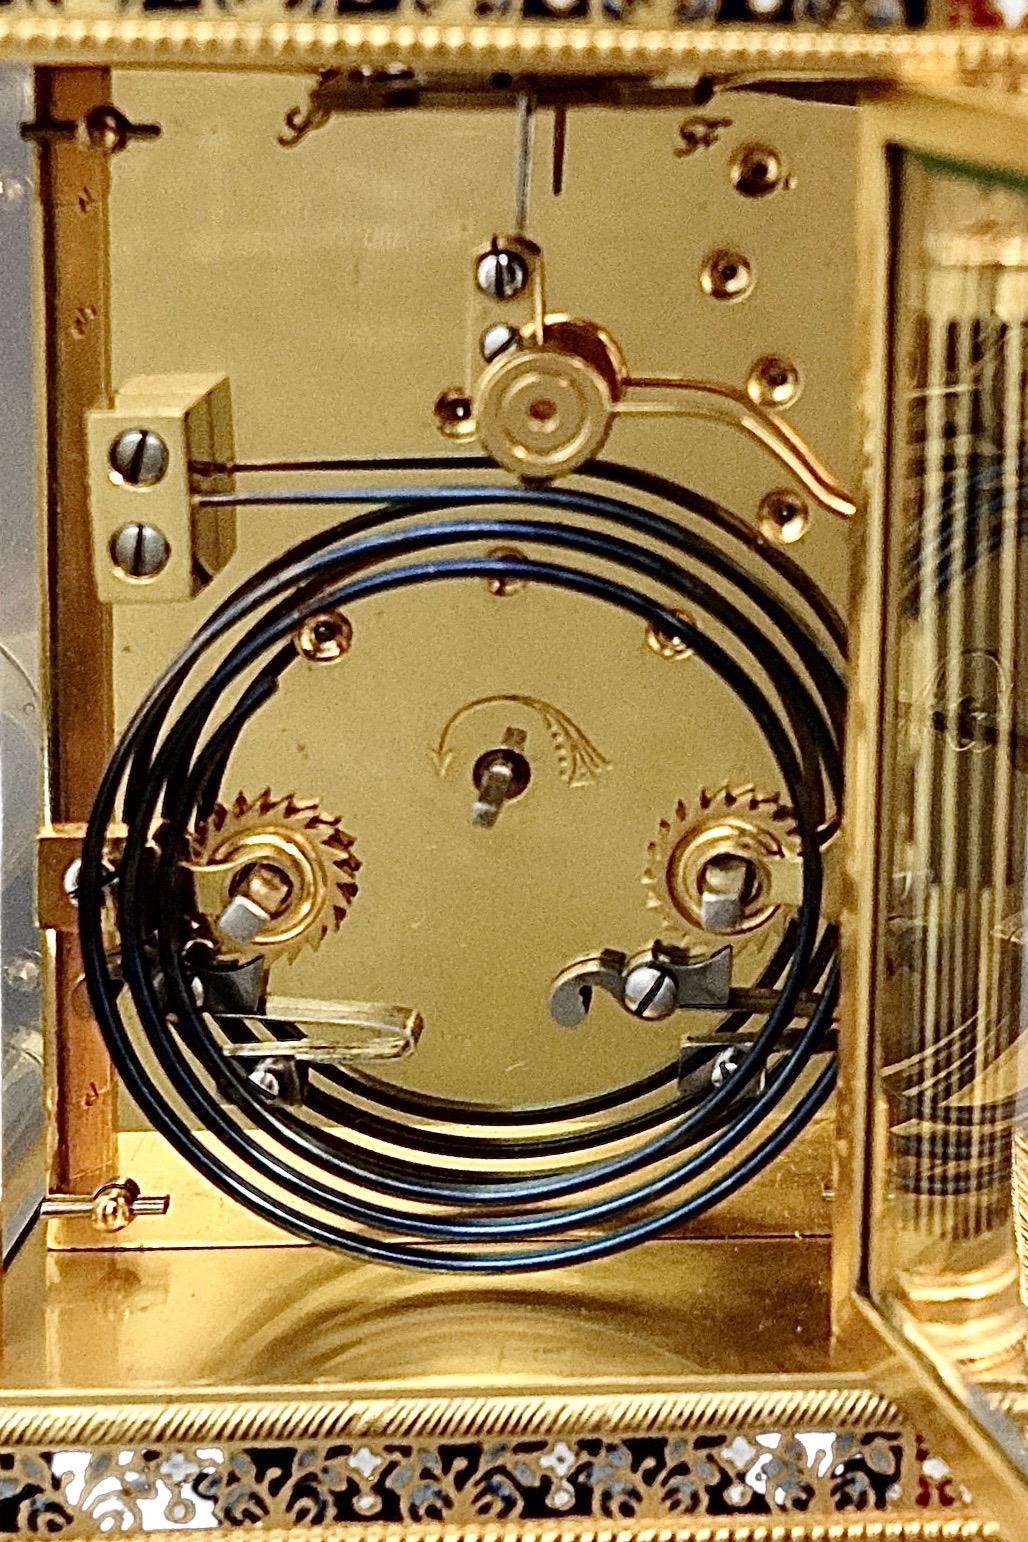 Eine atemberaubende antike Französisch Messing und champlevé Emaille montiert acht Tage Schlag und Wiederholung Wagen Uhr, mit einem schönen Schwan Guss Griff.

Die Kutschenuhr hat ein stilvolles und einzigartiges arabisches Zifferblatt mit einem